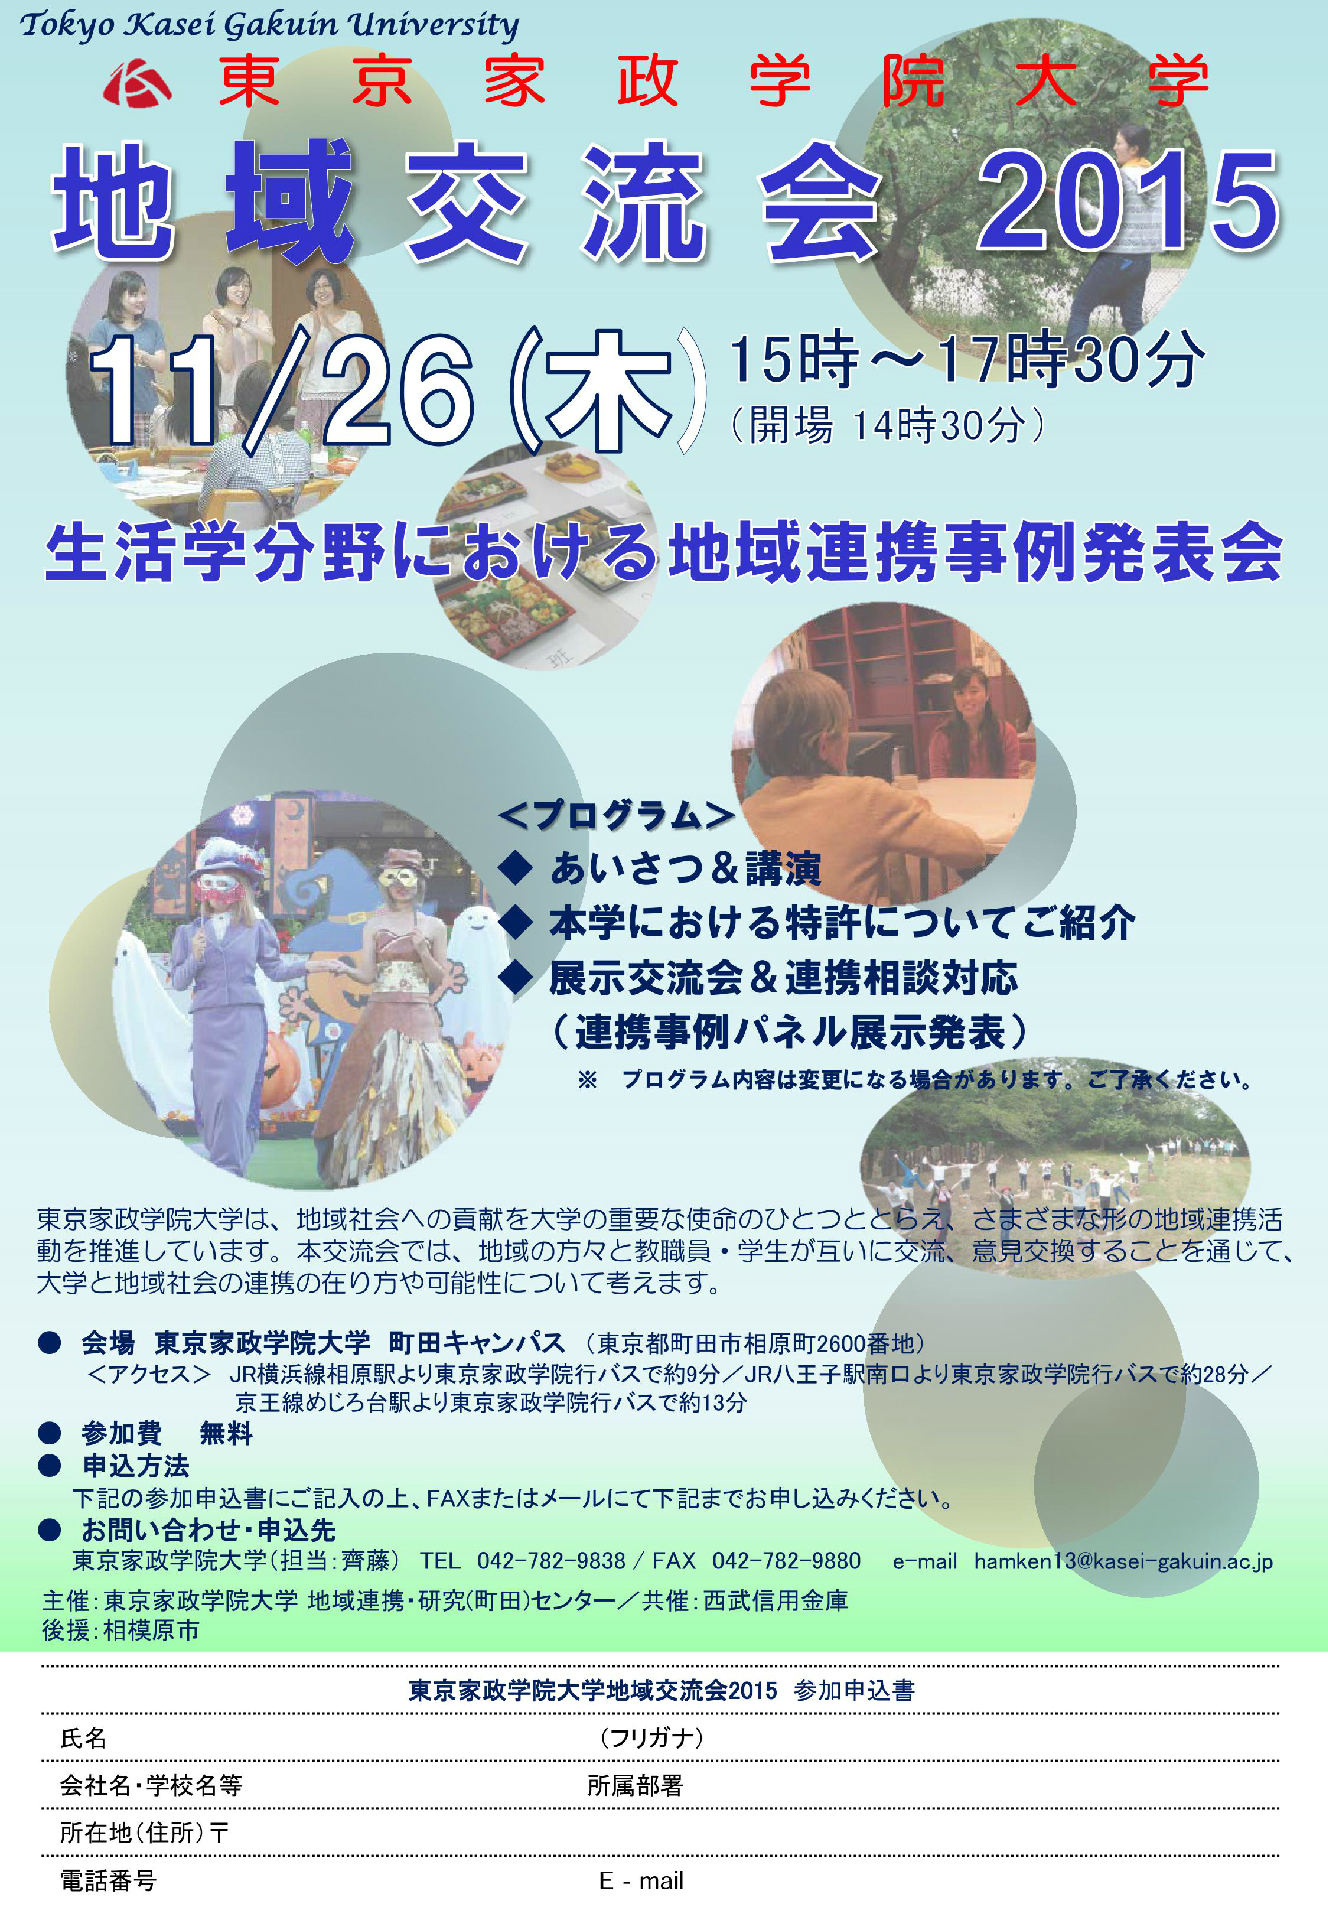 東京家政学院大学が11月26日に「地域交流会2015『生活学分野における地域連携事例発表会』」を開催